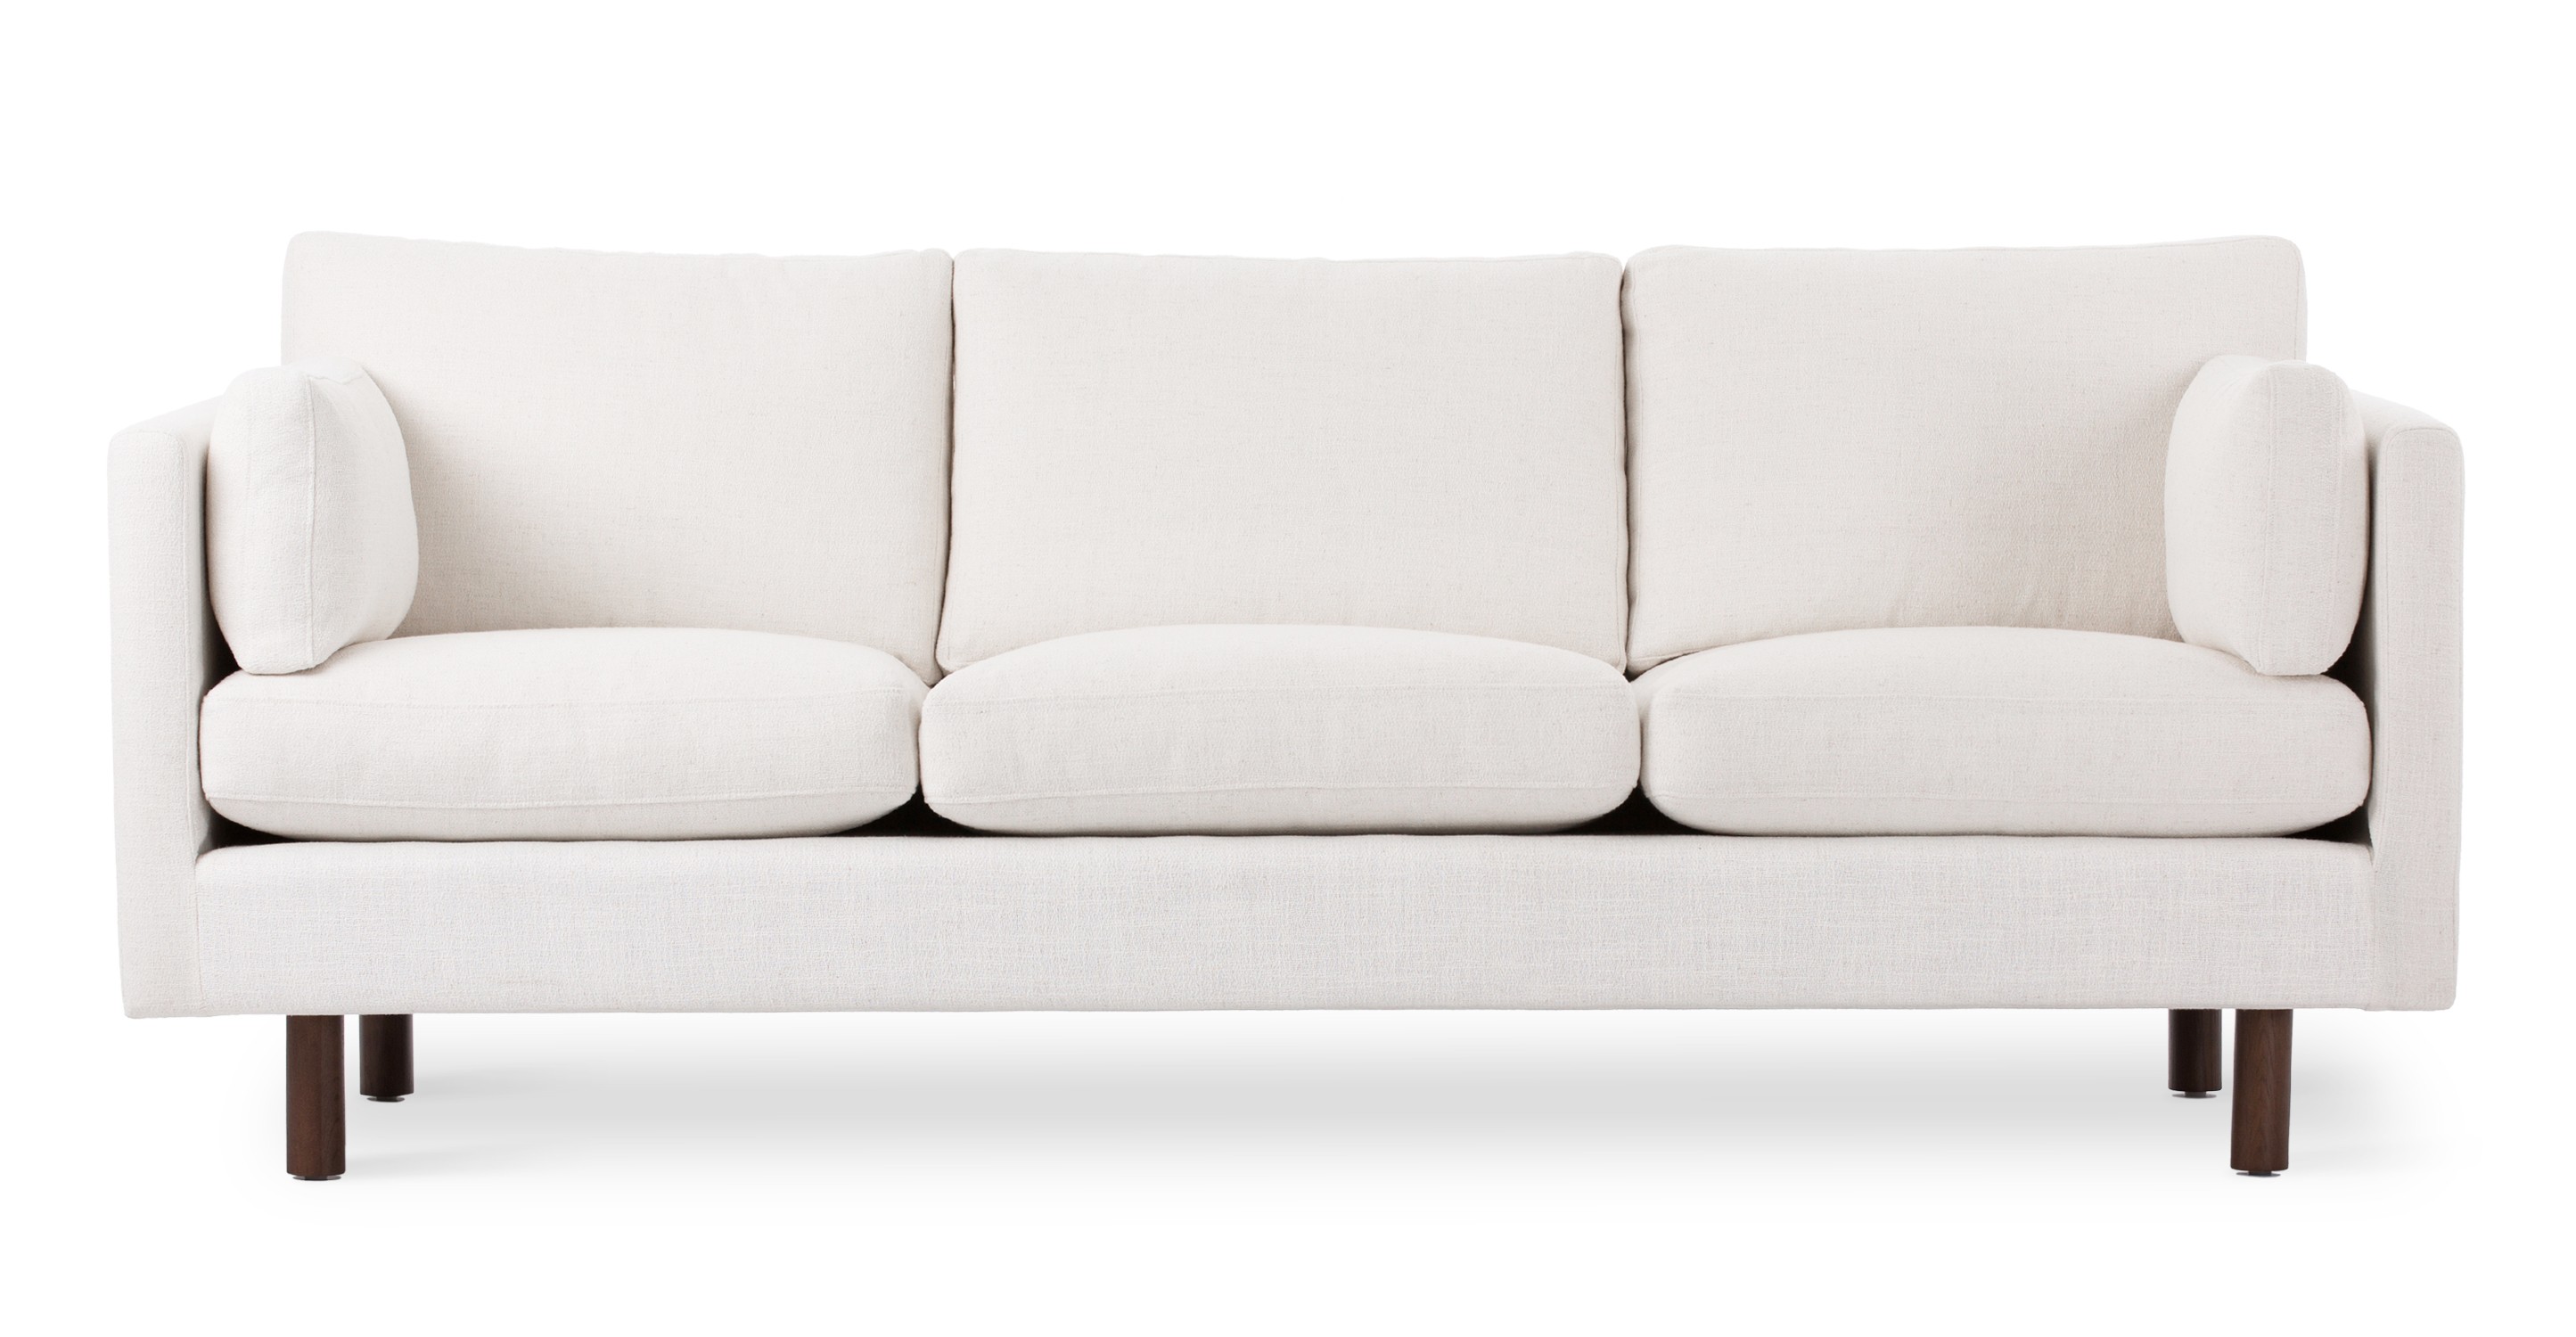 Stylish white sofa sofa modern white decorating ideas leather sectional bed  sleeper czndybj